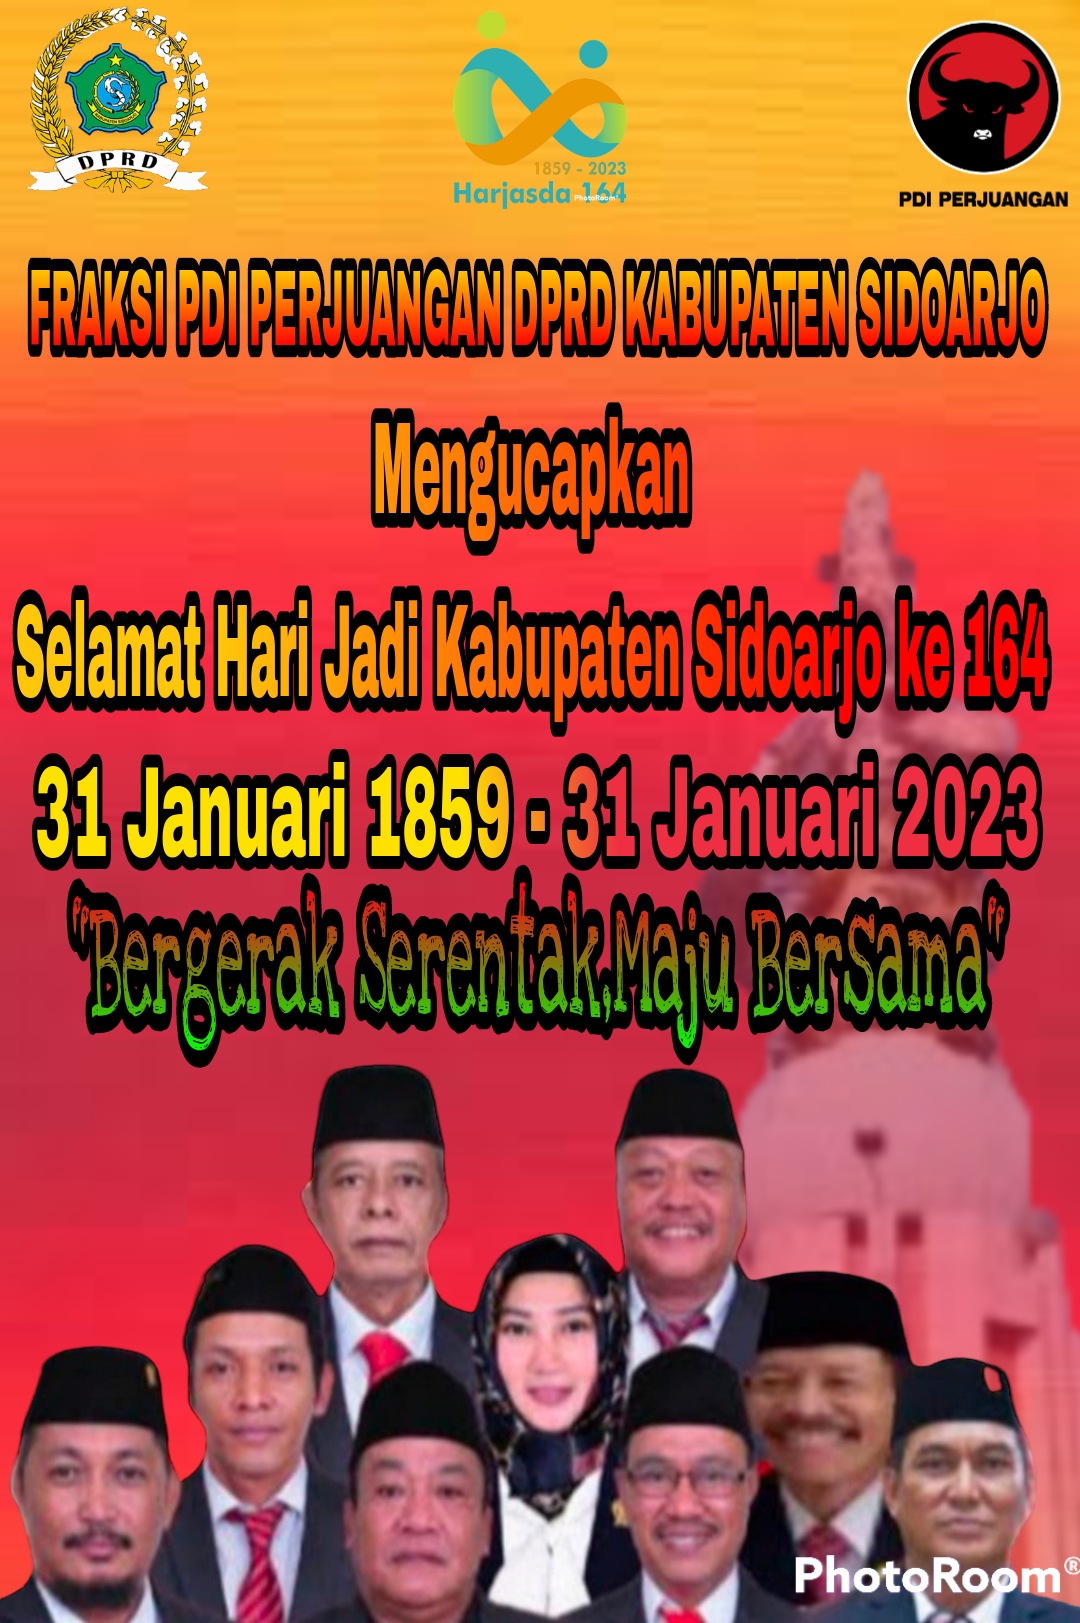 Fraksi PDI perjuangan DPRD Kabupaten Sidoarjo Mengucapkan Selamat Hari Jadi Kabupaten Sidoarjo ke 164  Tanggal 31 Januari 2023